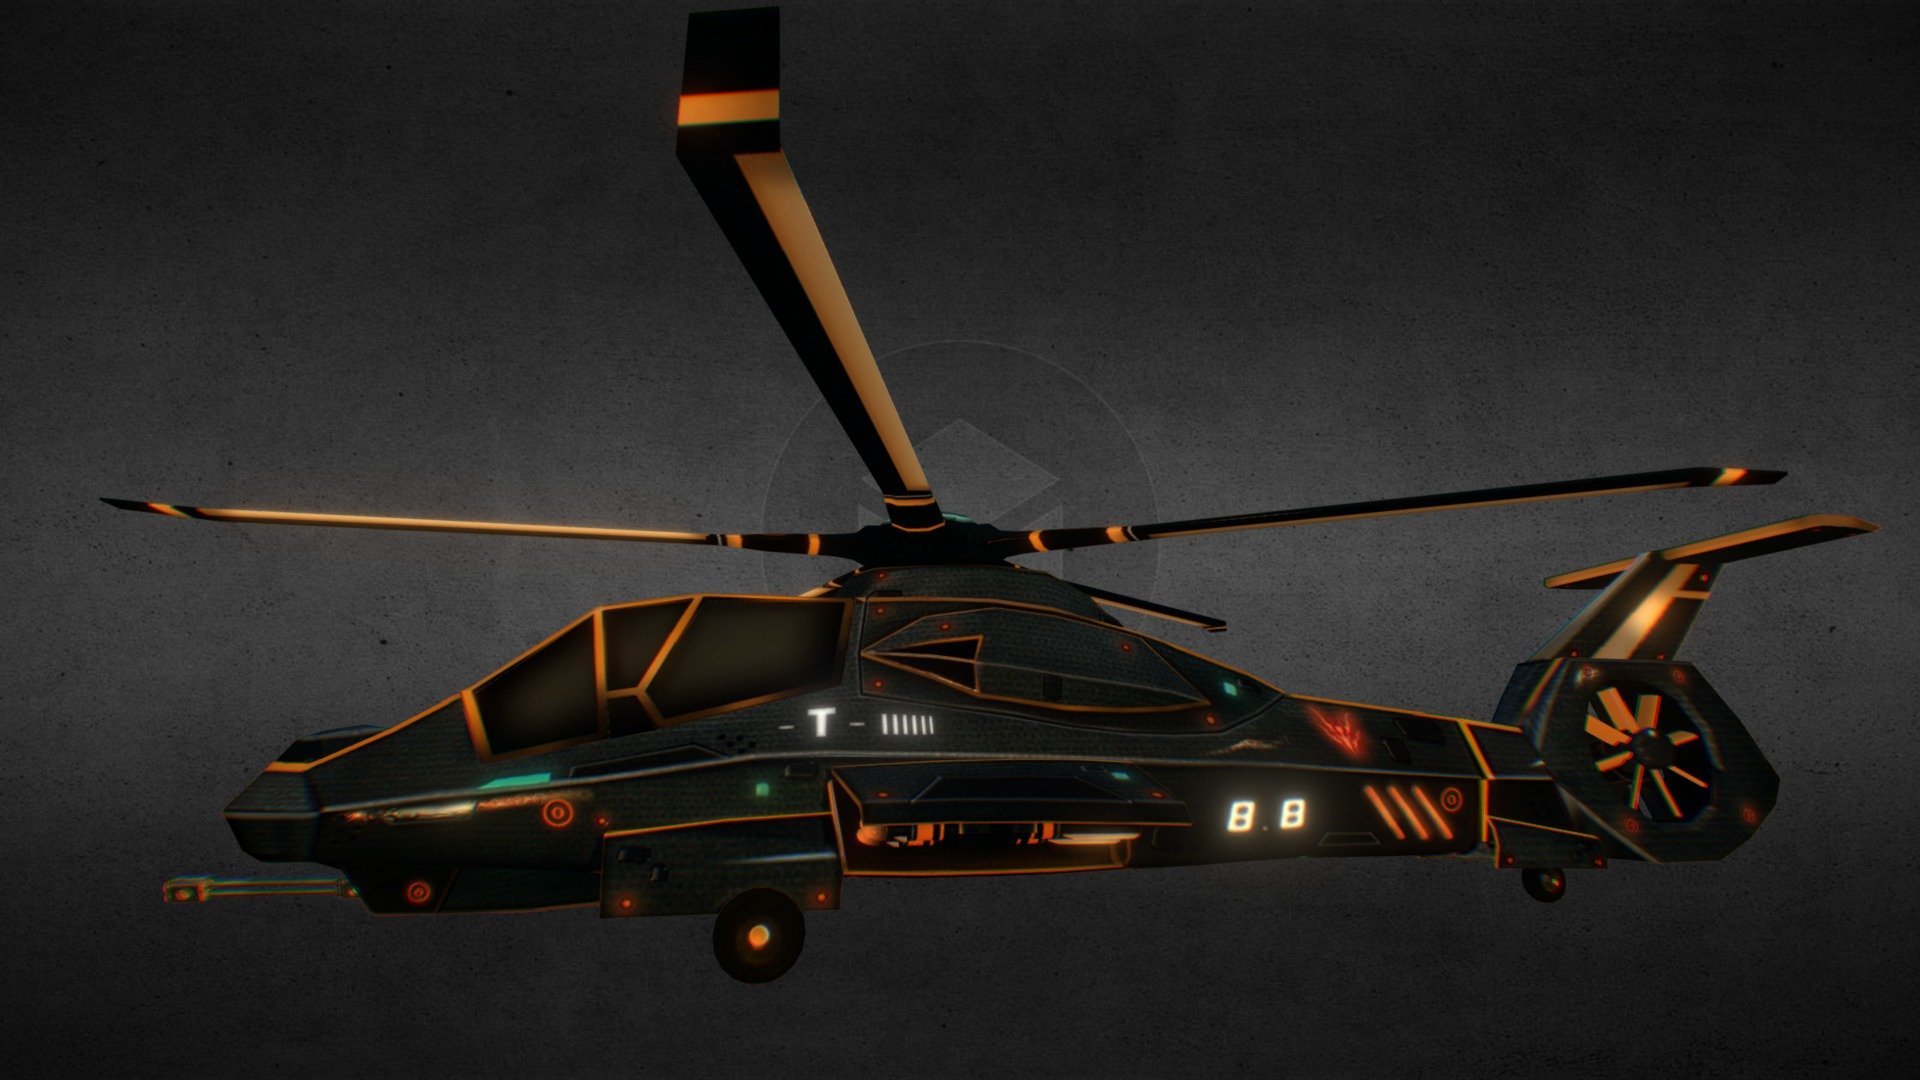 Akula gta 5 вертолет фото 101